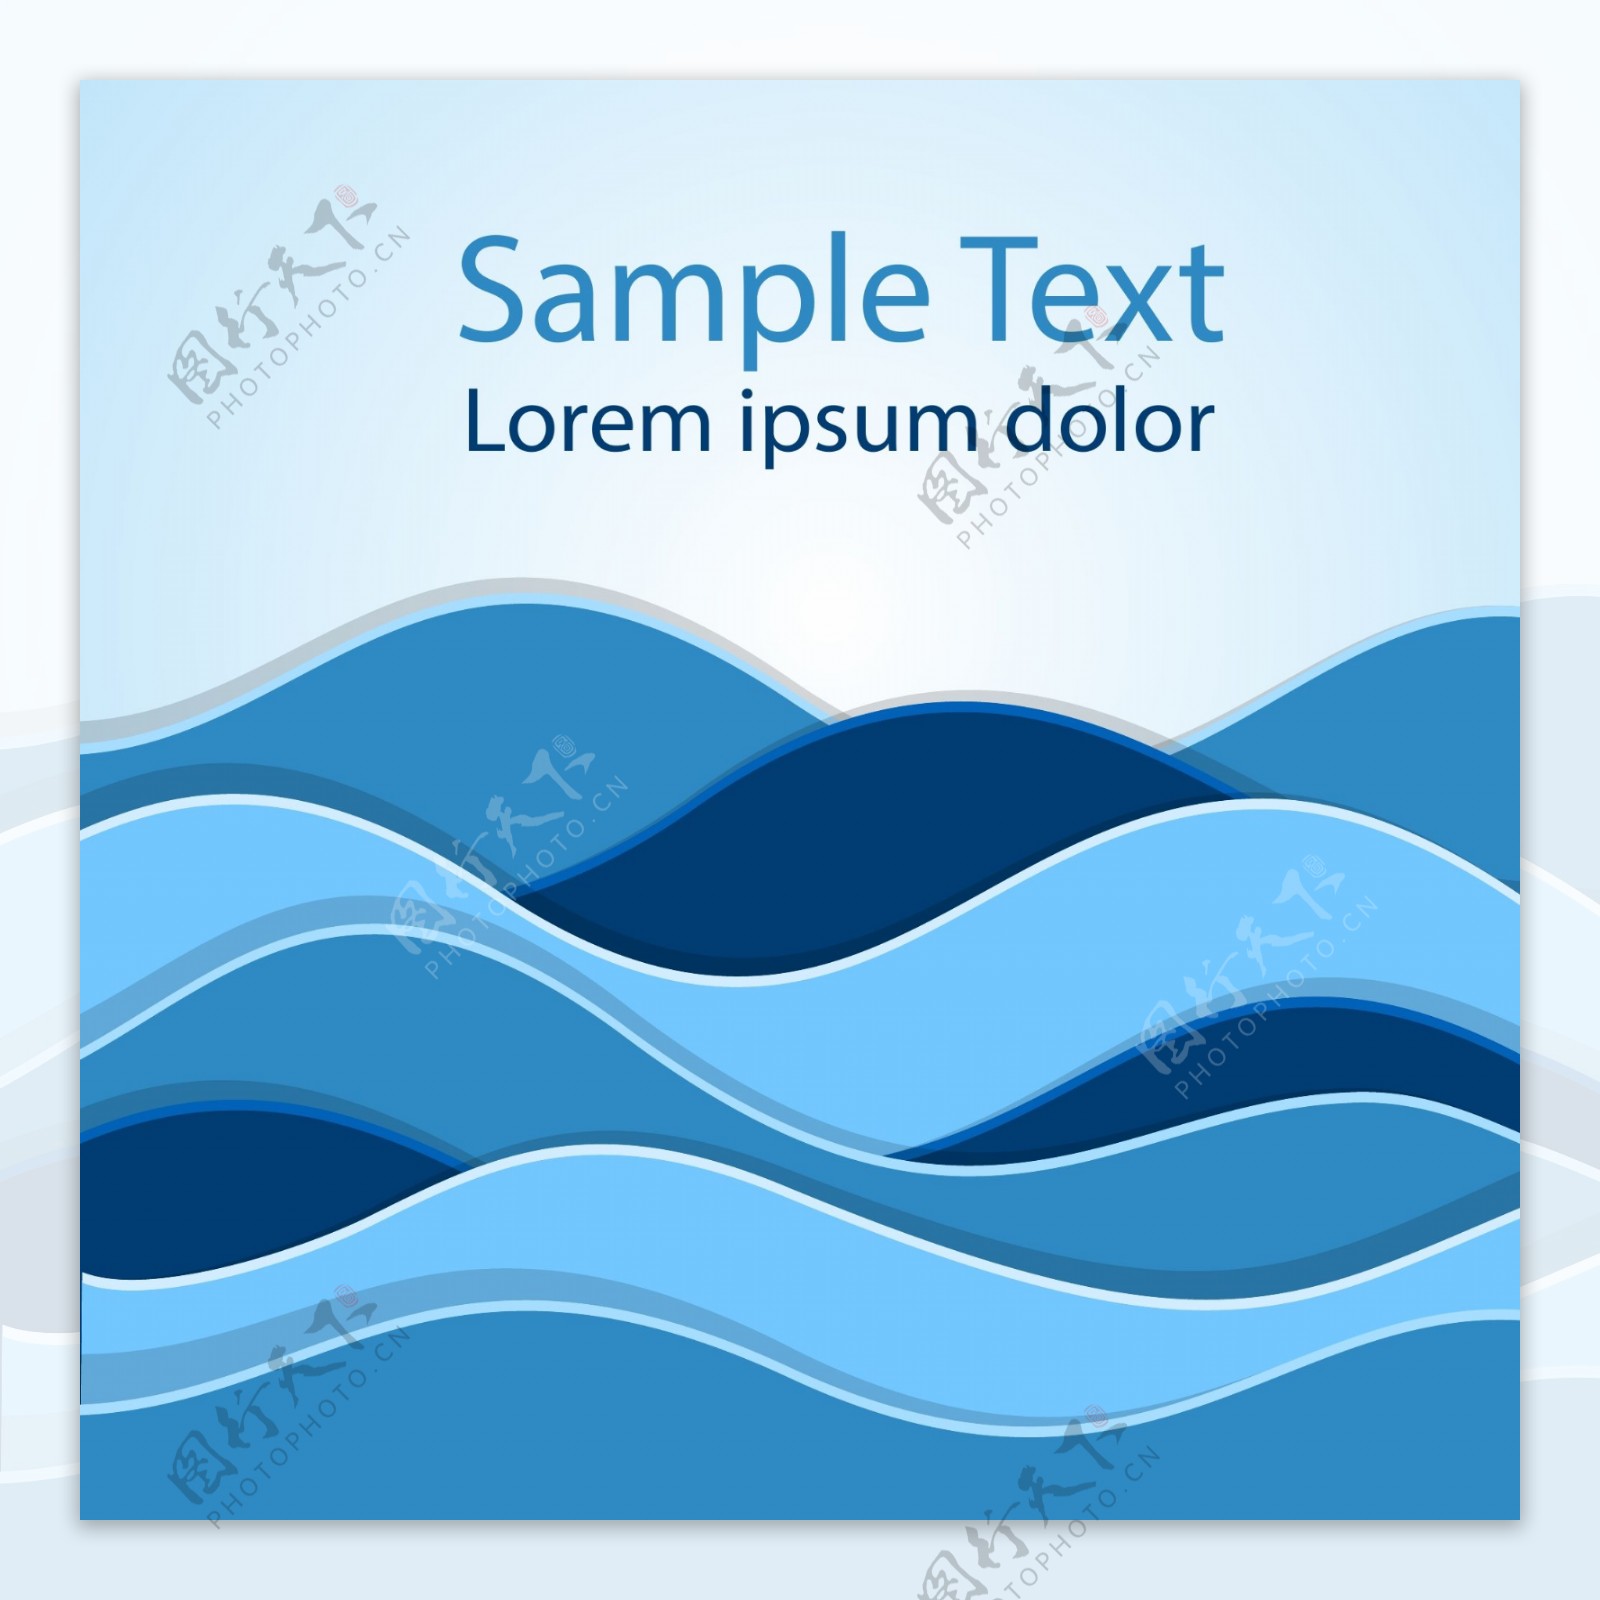 海浪PNG圖案素材免費下載 - 尺寸3000 × 2000px - 圖形ID400196708 - Lovepik